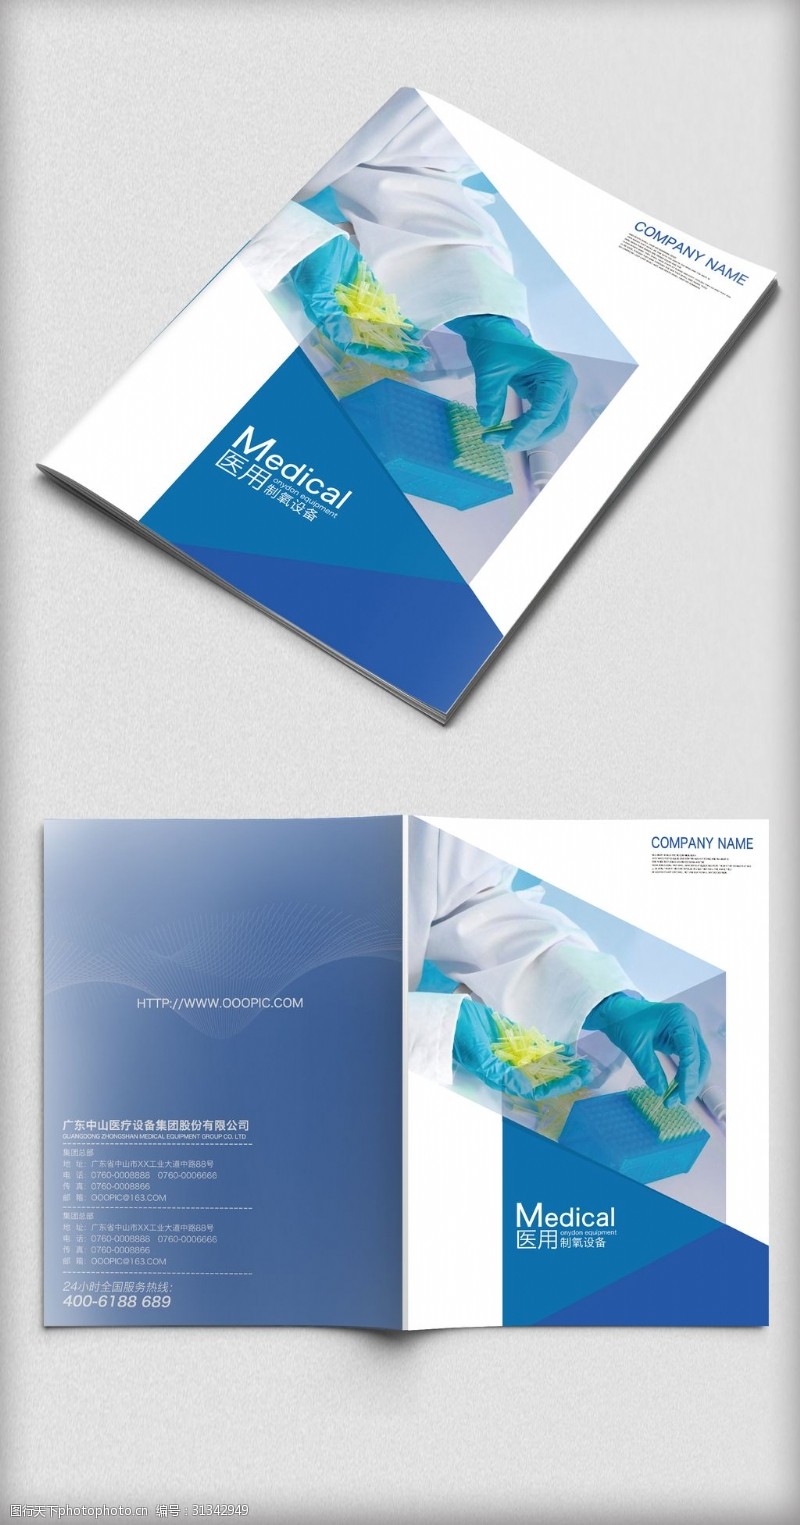 画册分层简约蓝色背景企业医疗设备宣传画册封面